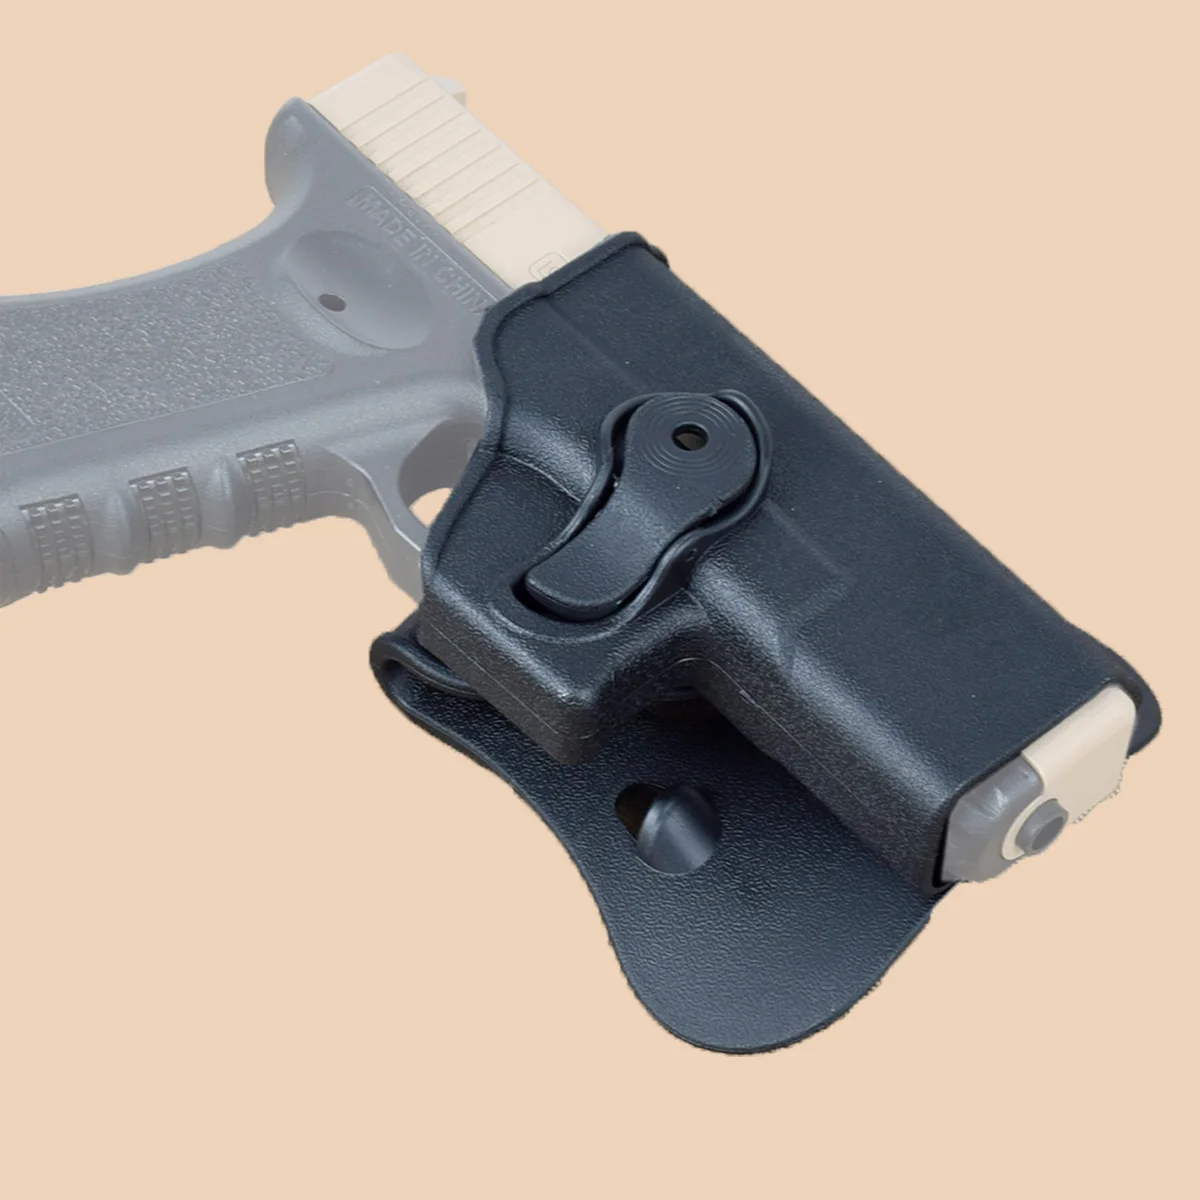 

Чехол-кобура для пистолета IMI Glock с магнитной сумкой диаметром 9 мм для охоты Gen 1-4 Glock 17